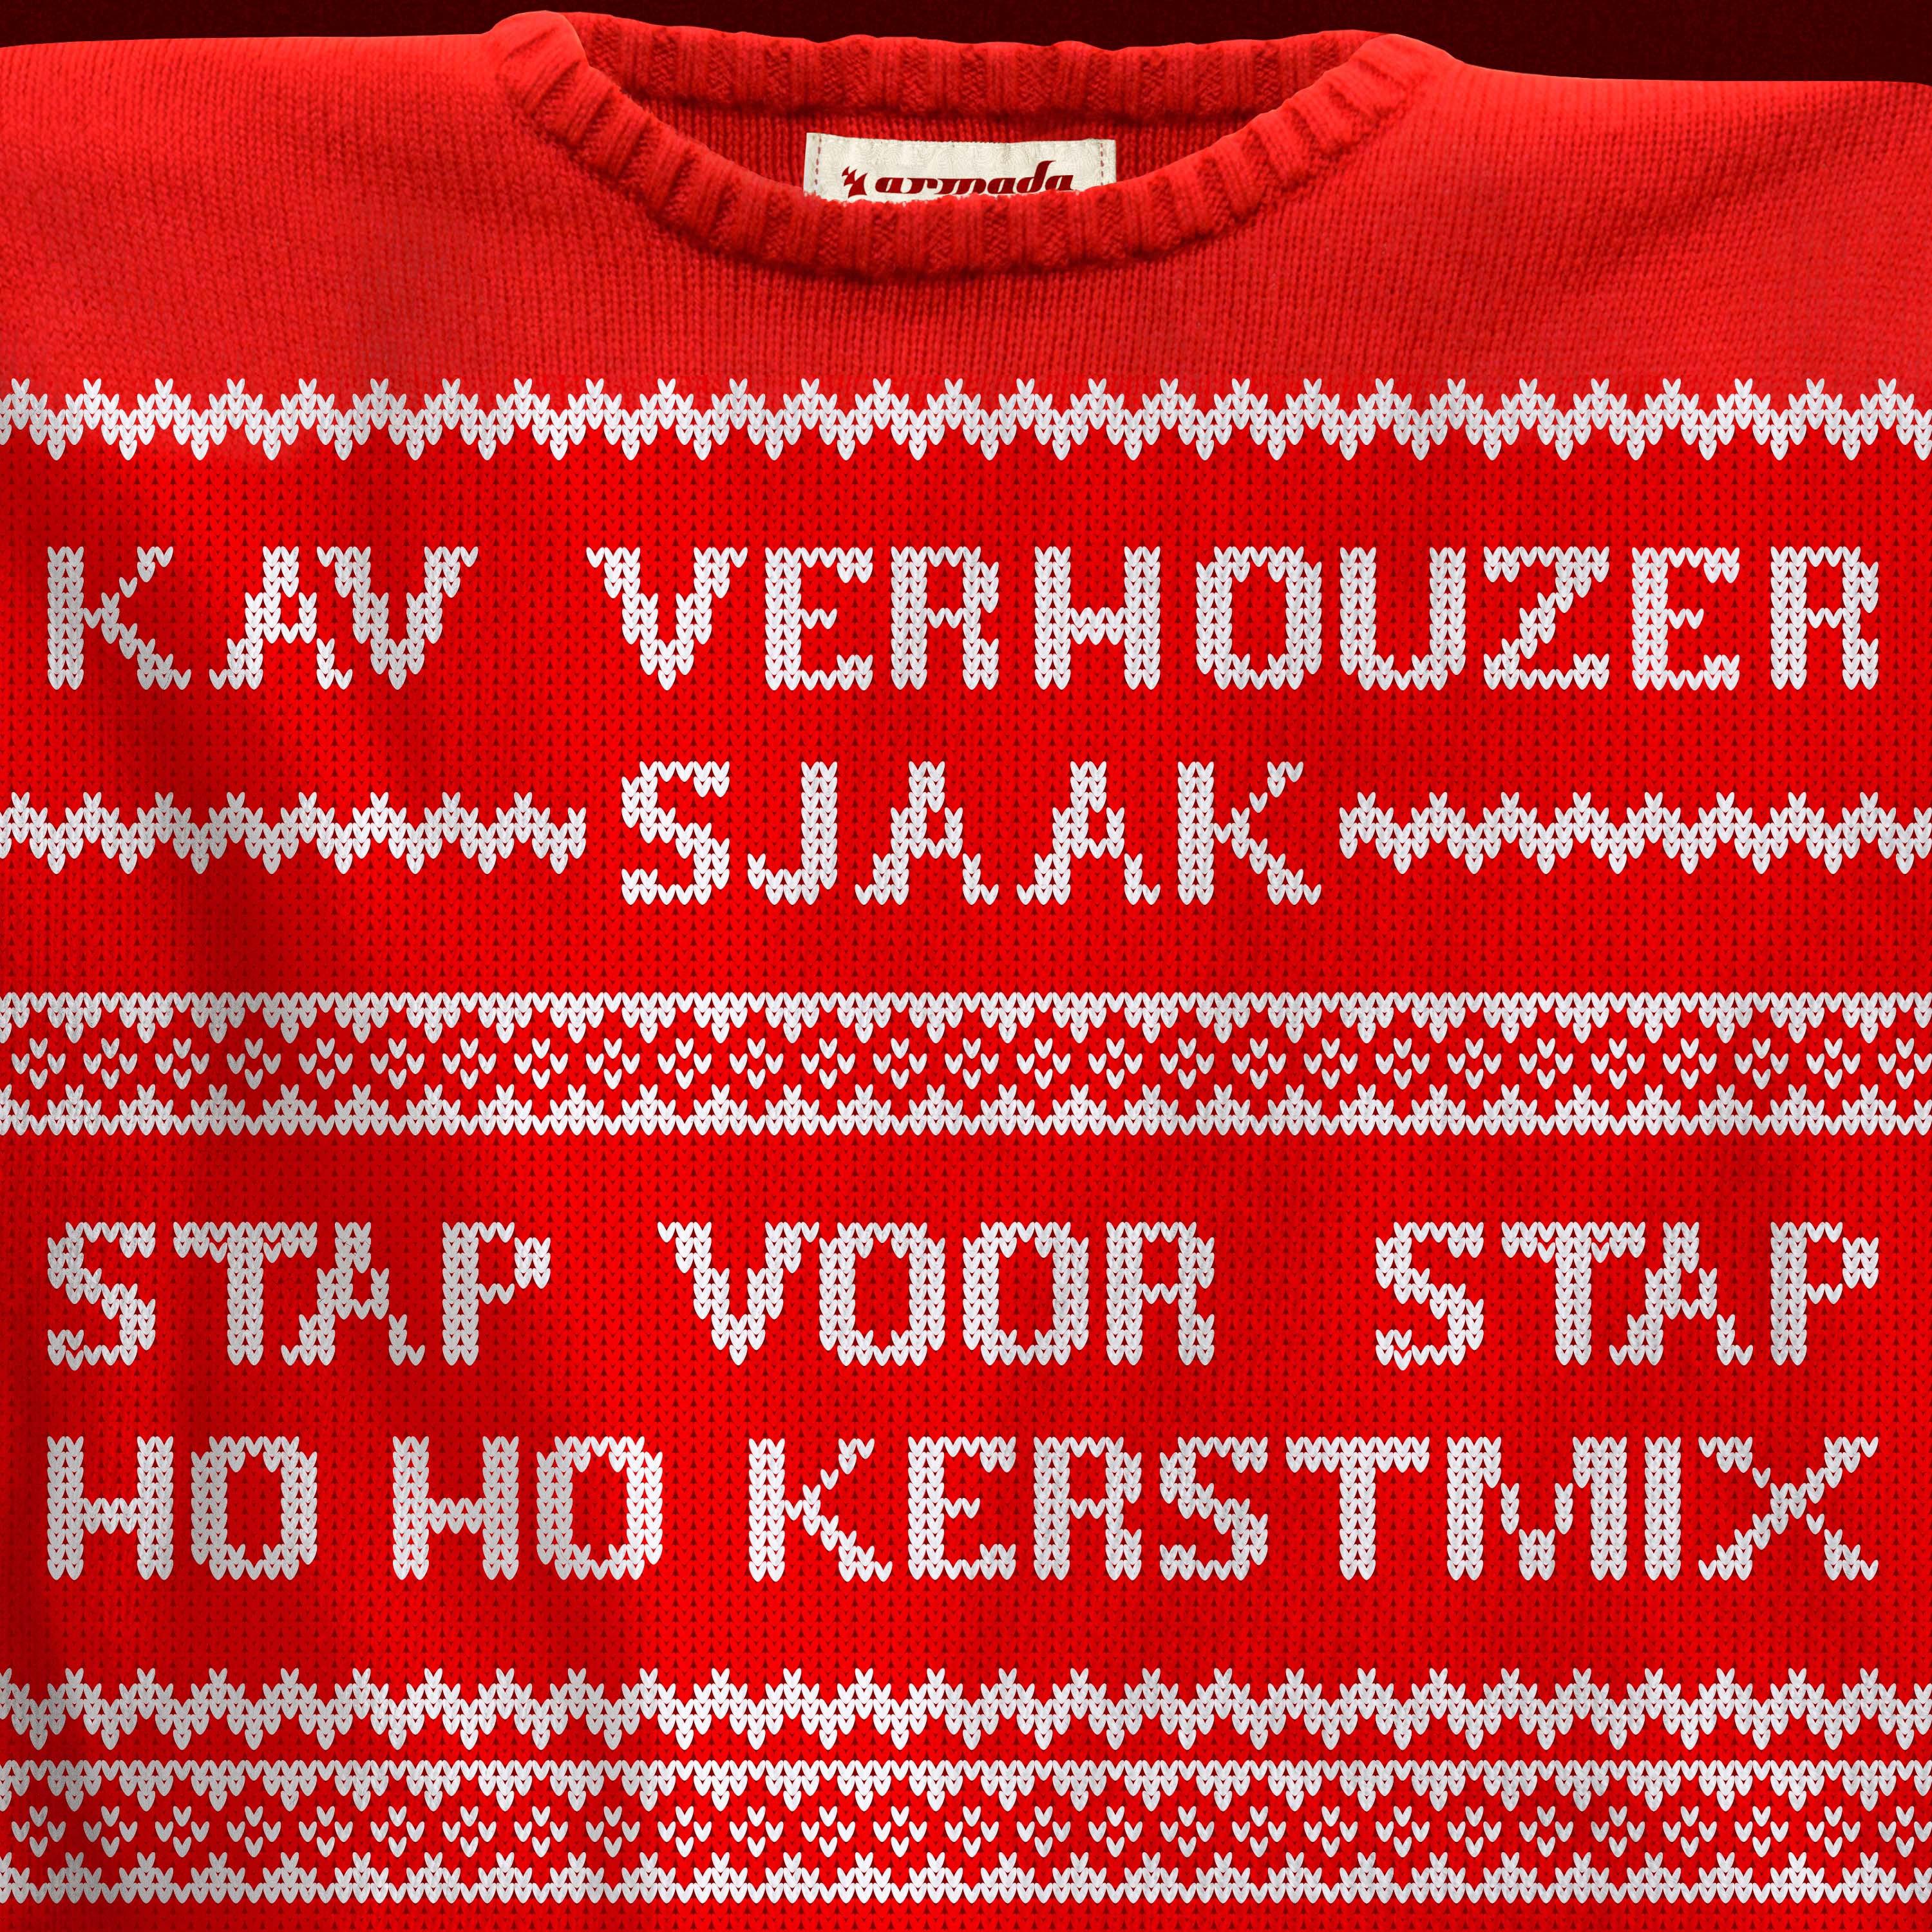 Kav Verhouzer - Stap Voor Stap (Ho Ho Kerstmix)